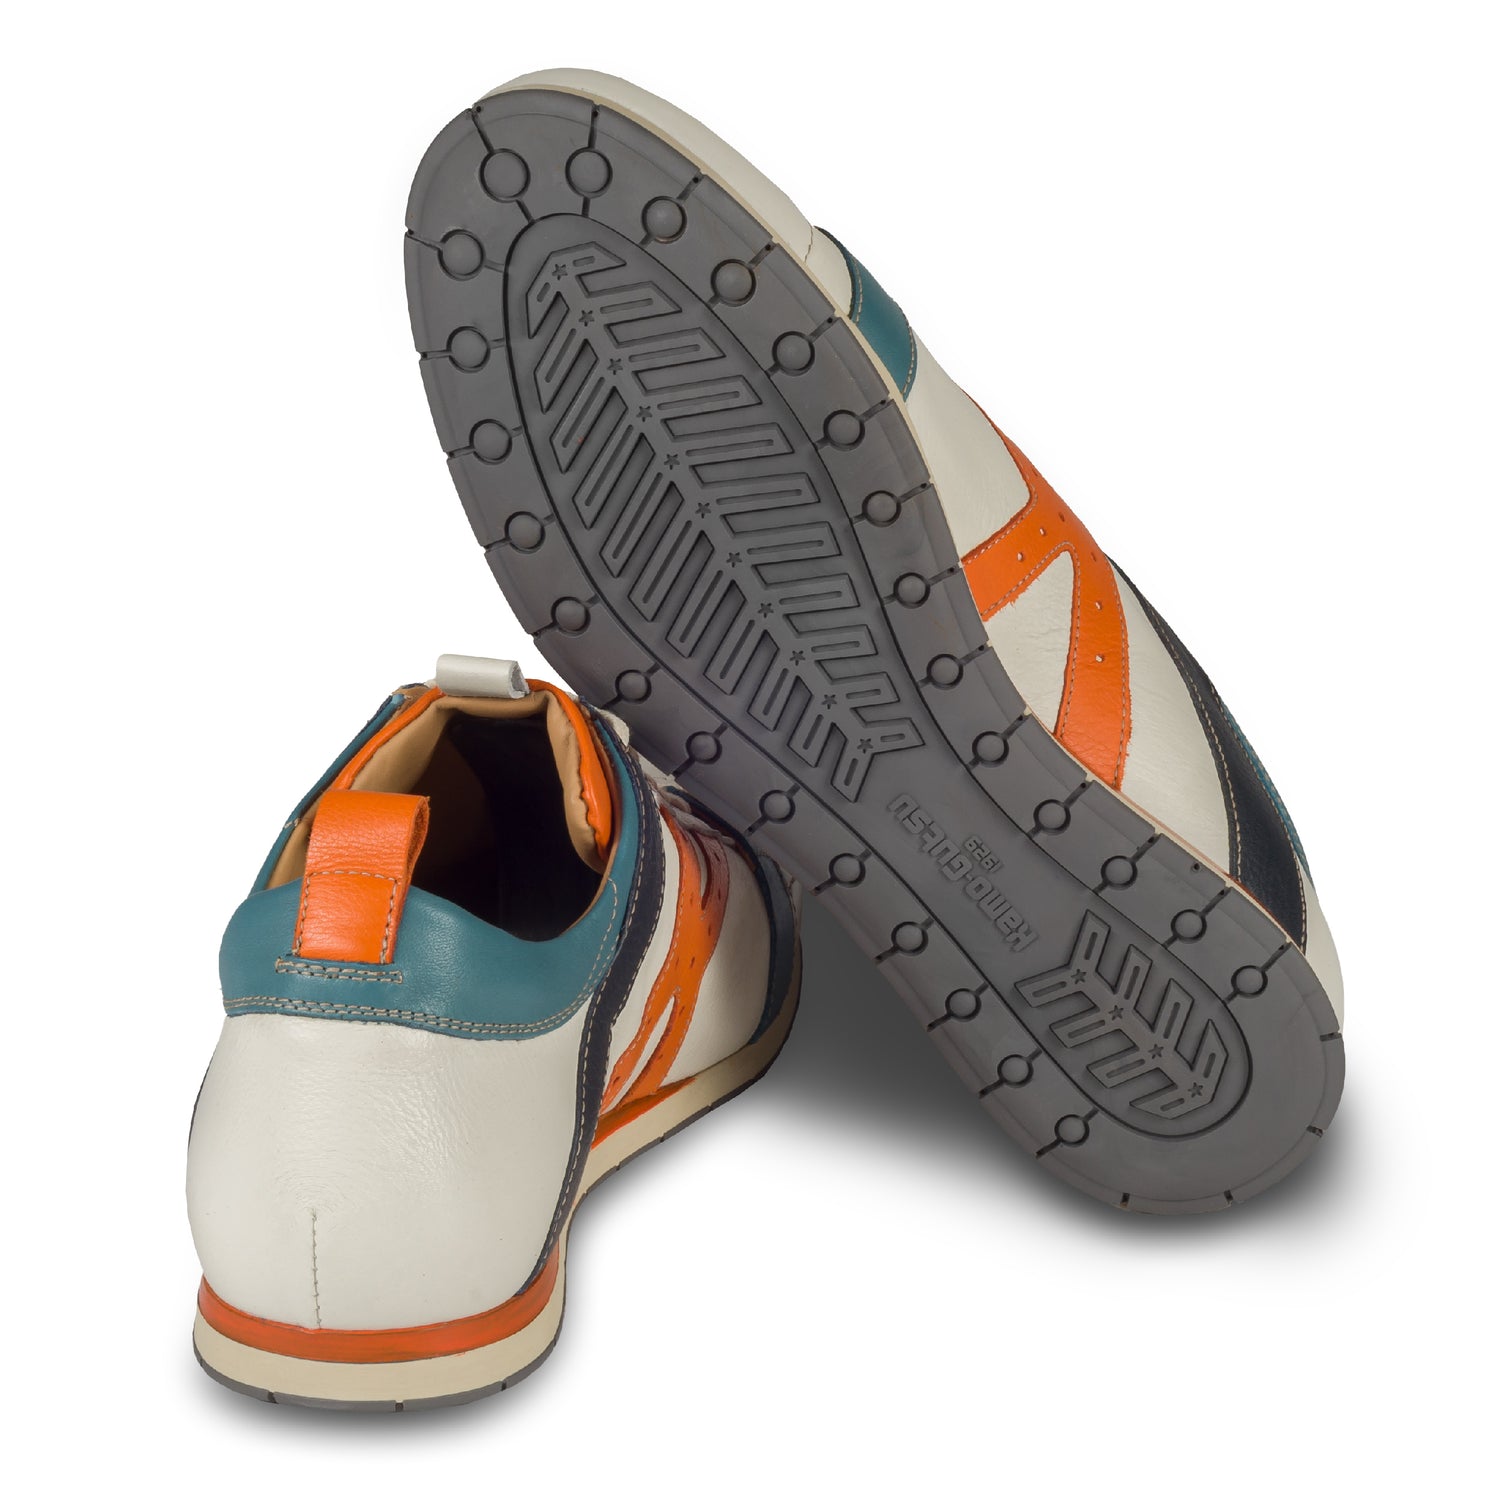 KAMO-GUTSU Herren Leder Sneaker, weiß mit orange und blau, Modell TIFO-042 gel ice arancio. Handgefertigt. Ansicht der Ferse und Sohlenunterseite.